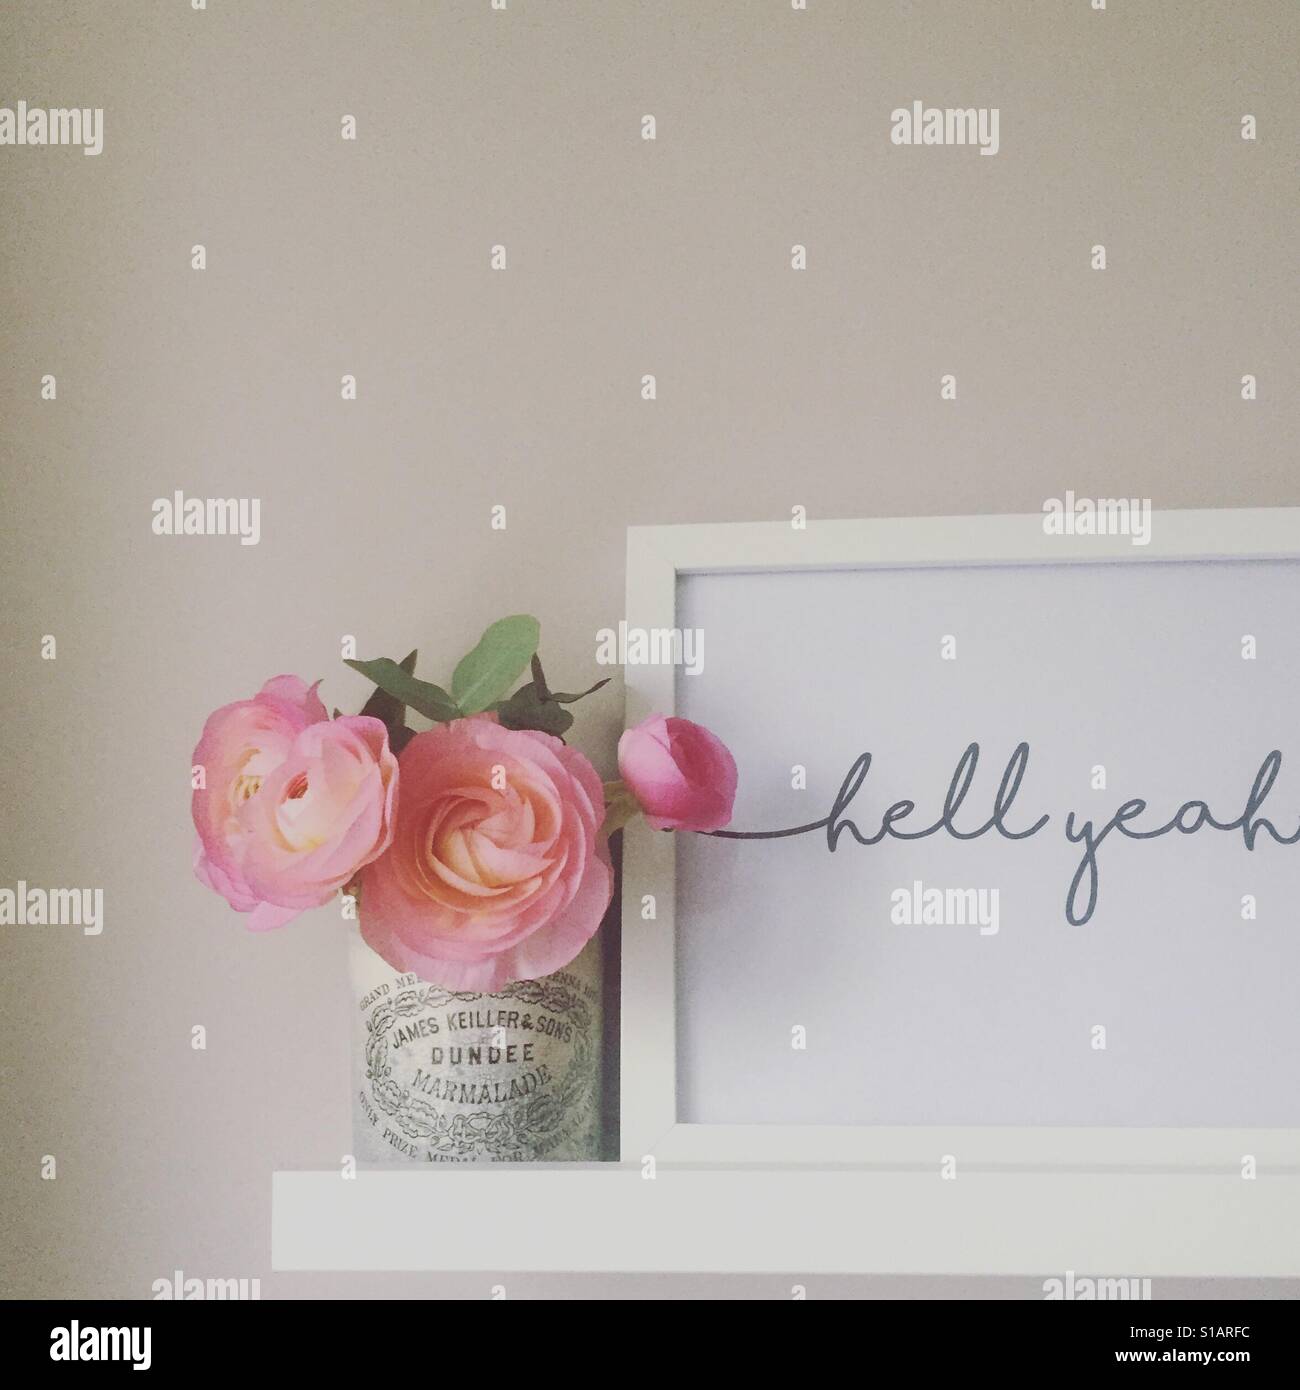 Hölle ja Typografie print und Blumen auf einem Regal Stockfoto